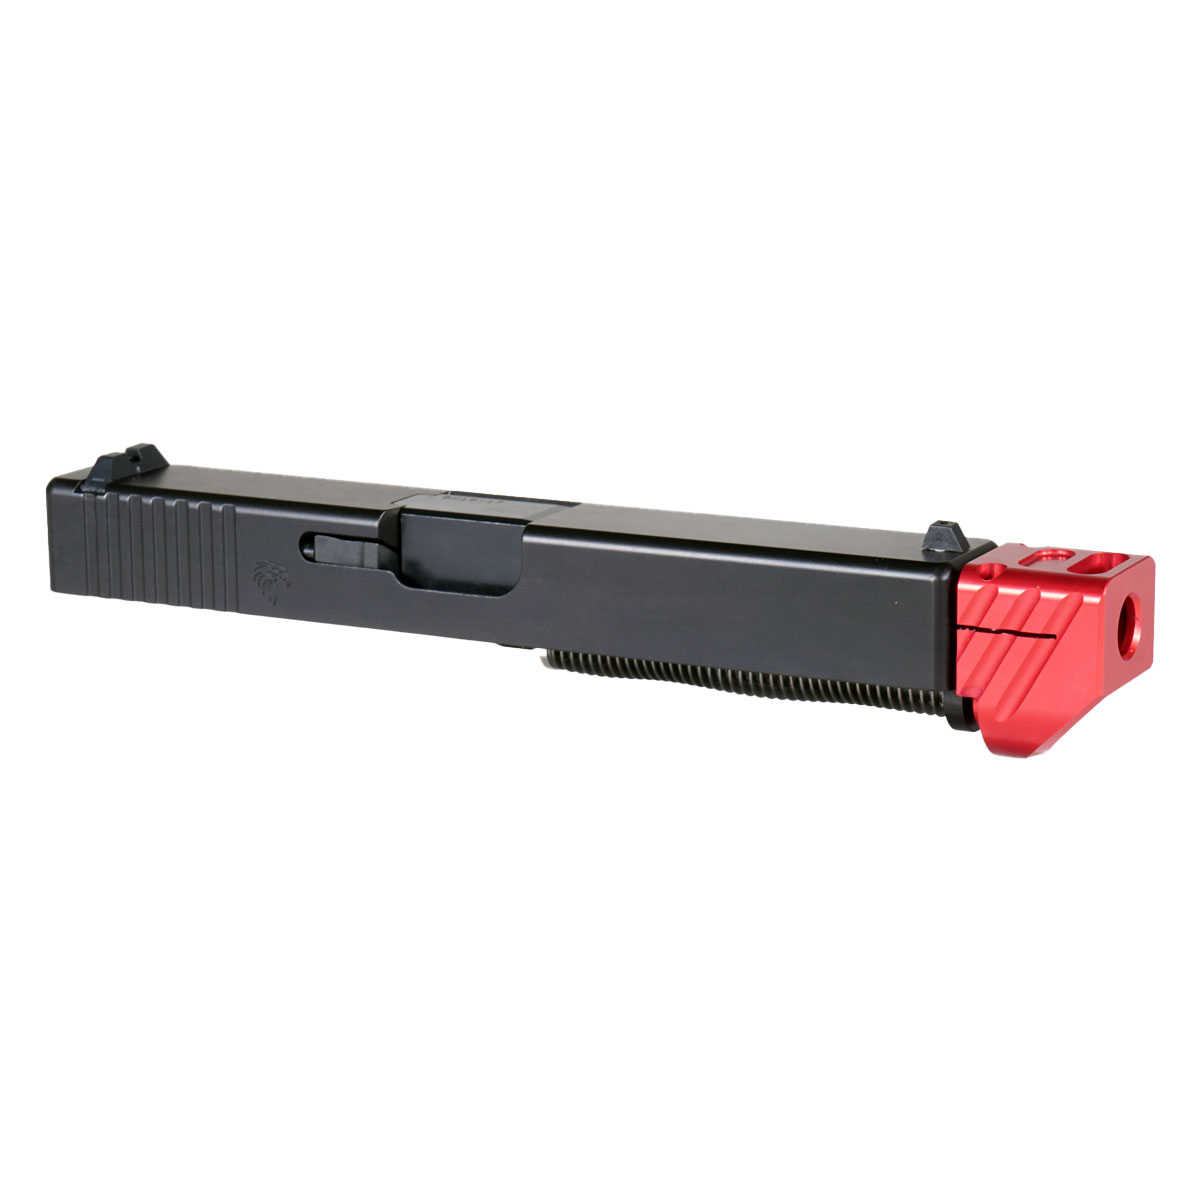 DDS 'Boomerango V3 w/ Red Compensator' 9mm Complete Slide Kit - Glock 17 Gen 1-3 Compatible